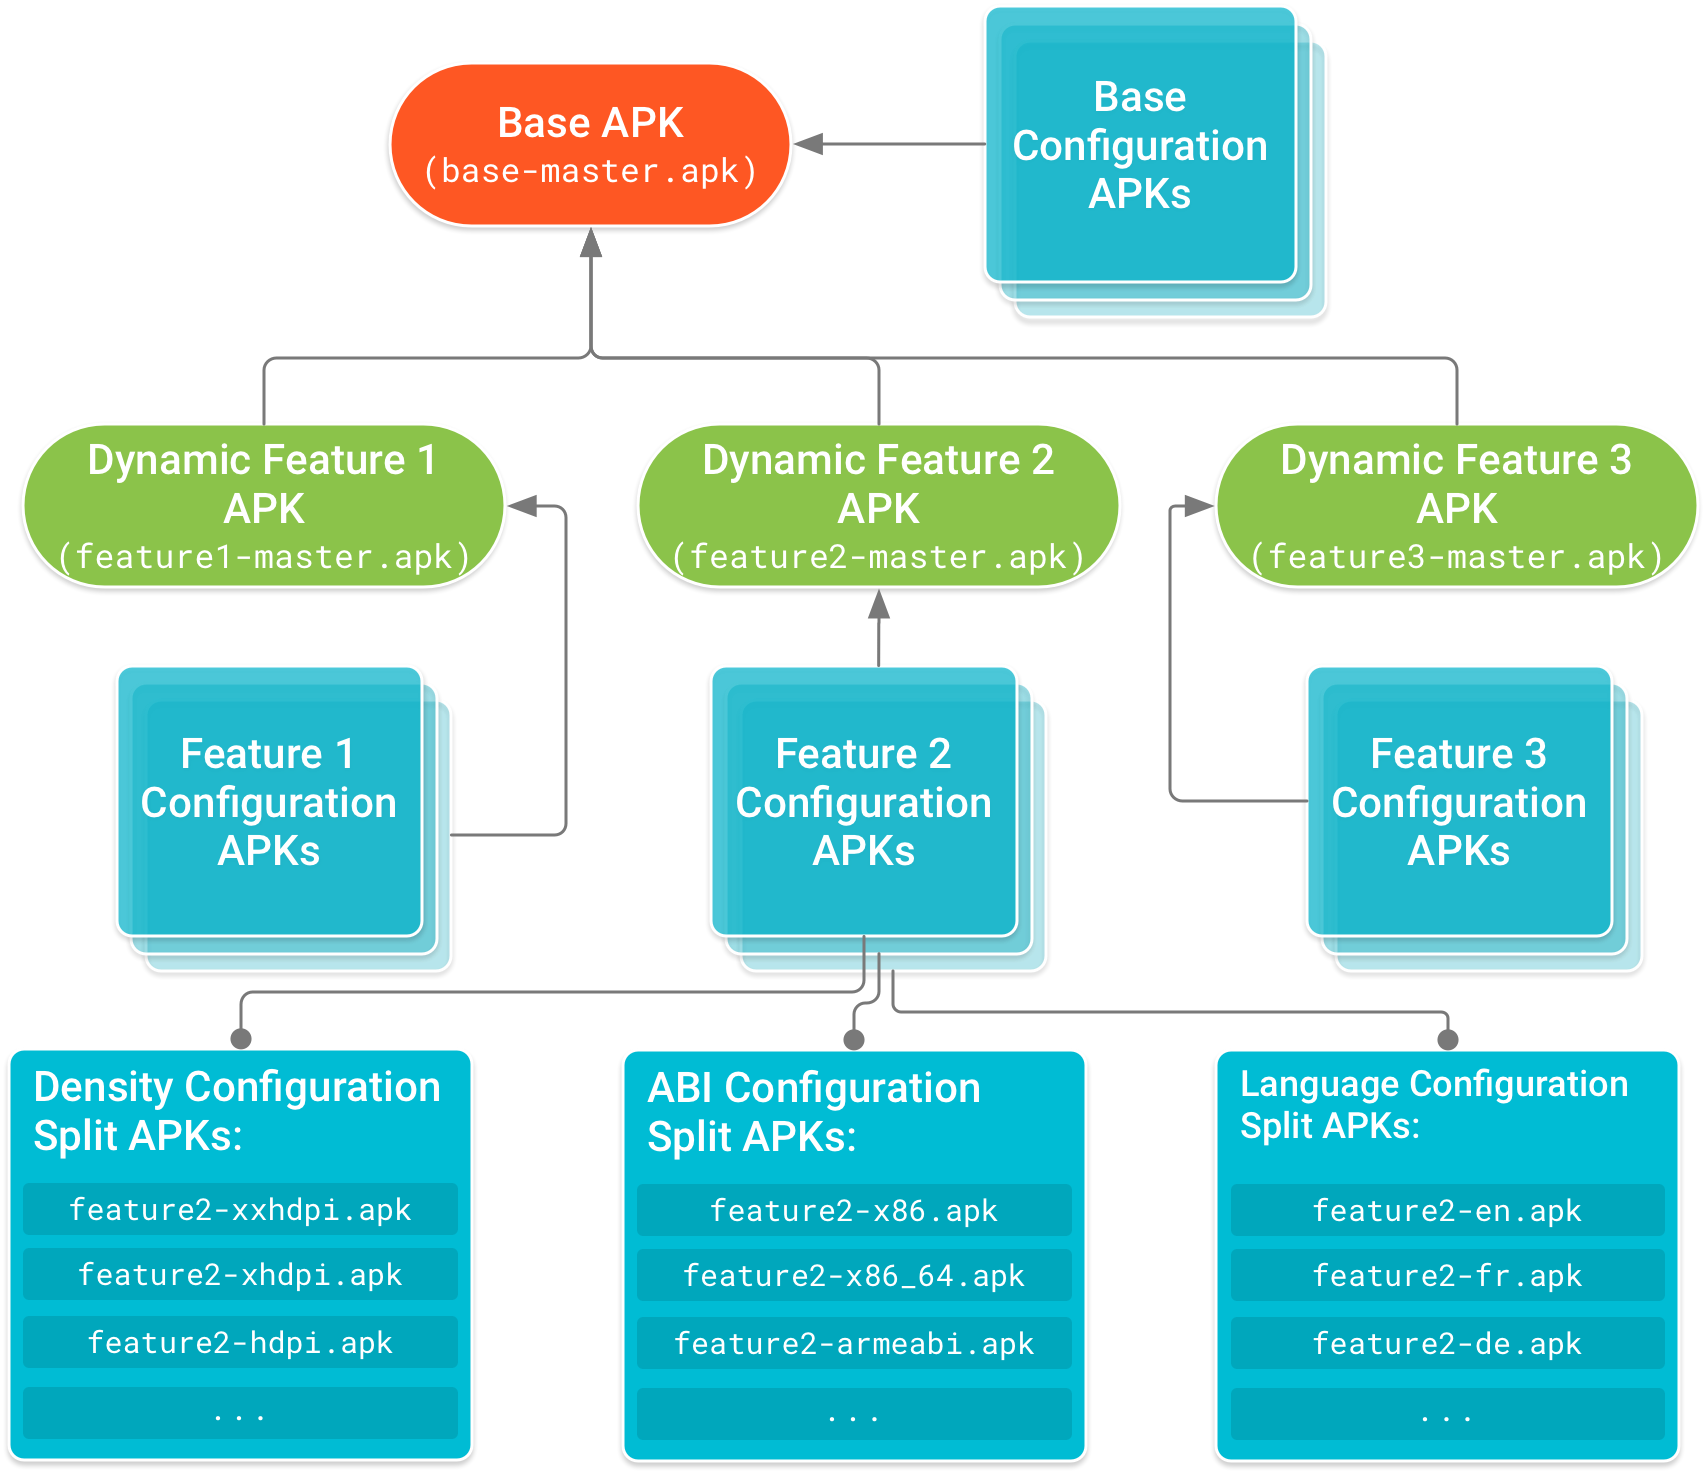 ベース APK はツリーのルートを形成し、機能モジュール APK はベース APK に依存します。依存関係ツリーのリーフノードを形成する構成 APK には、ベース APK とそれぞれの機能モジュール APK のデバイス設定に応じたコードとリソースが含まれます。